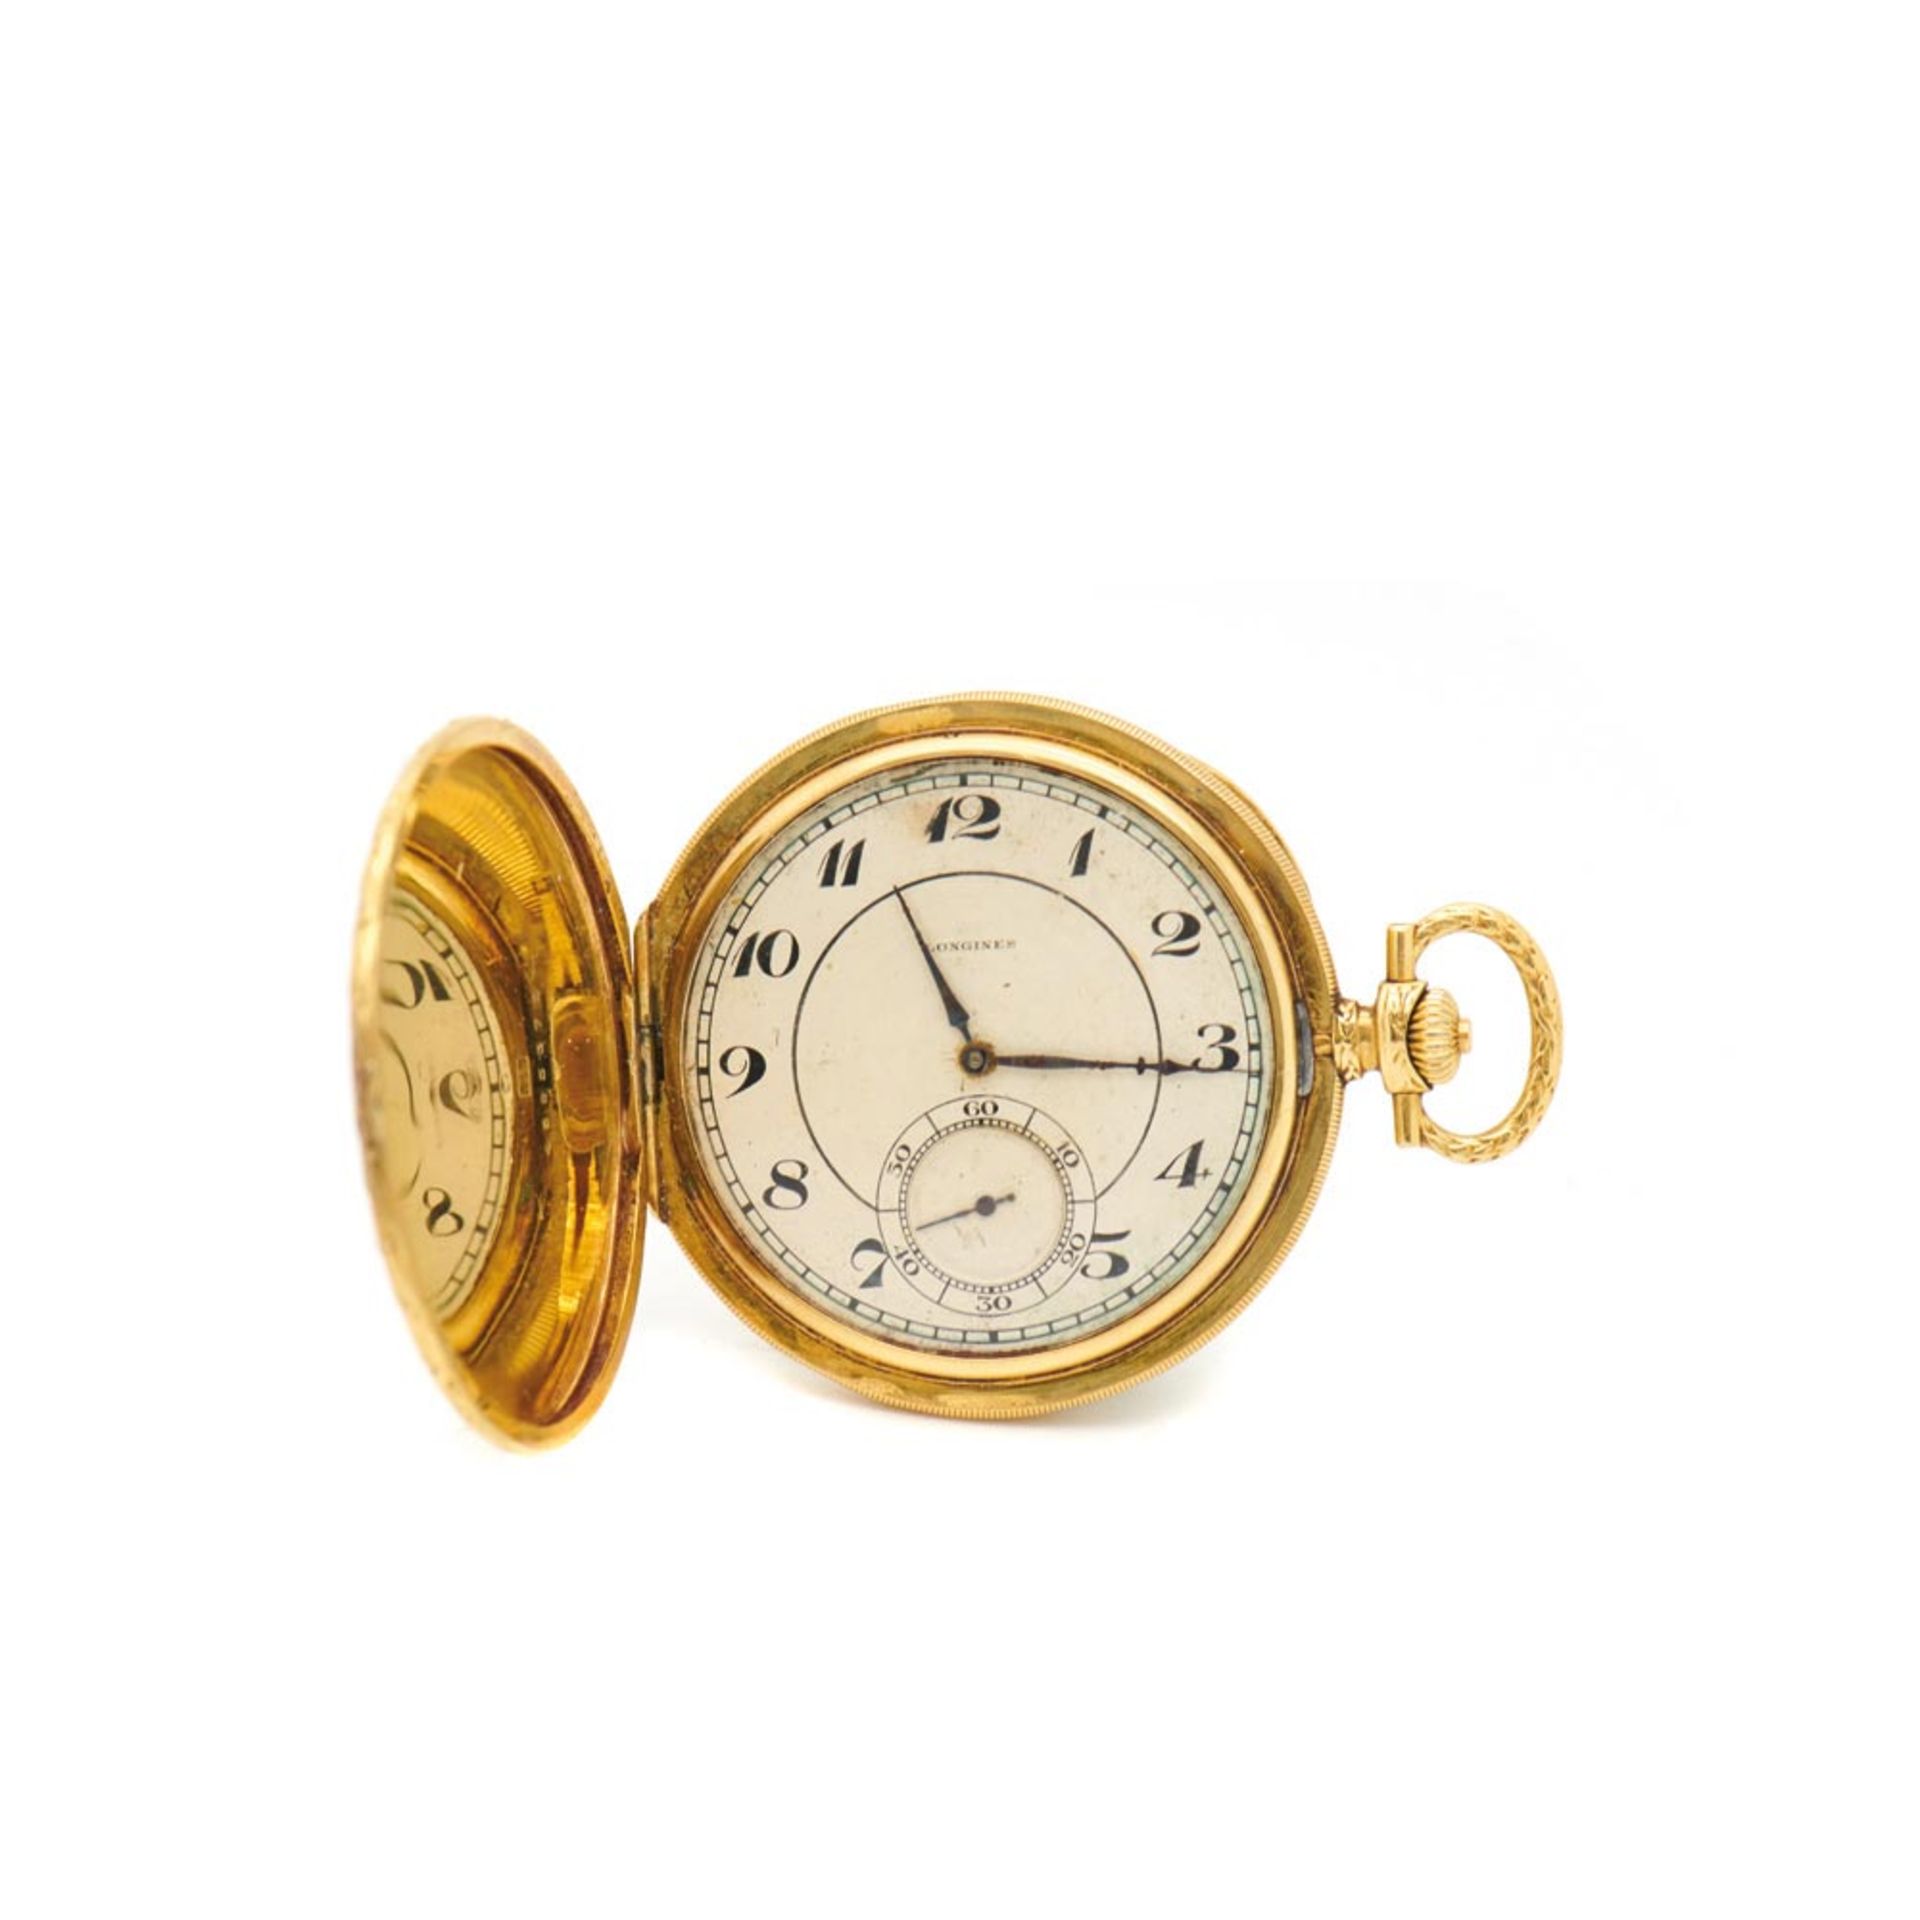 Reloj de bolsillo saboneta Longines, ppios. del s.XX. En oro. Esfera blanca con numeración arábiga y